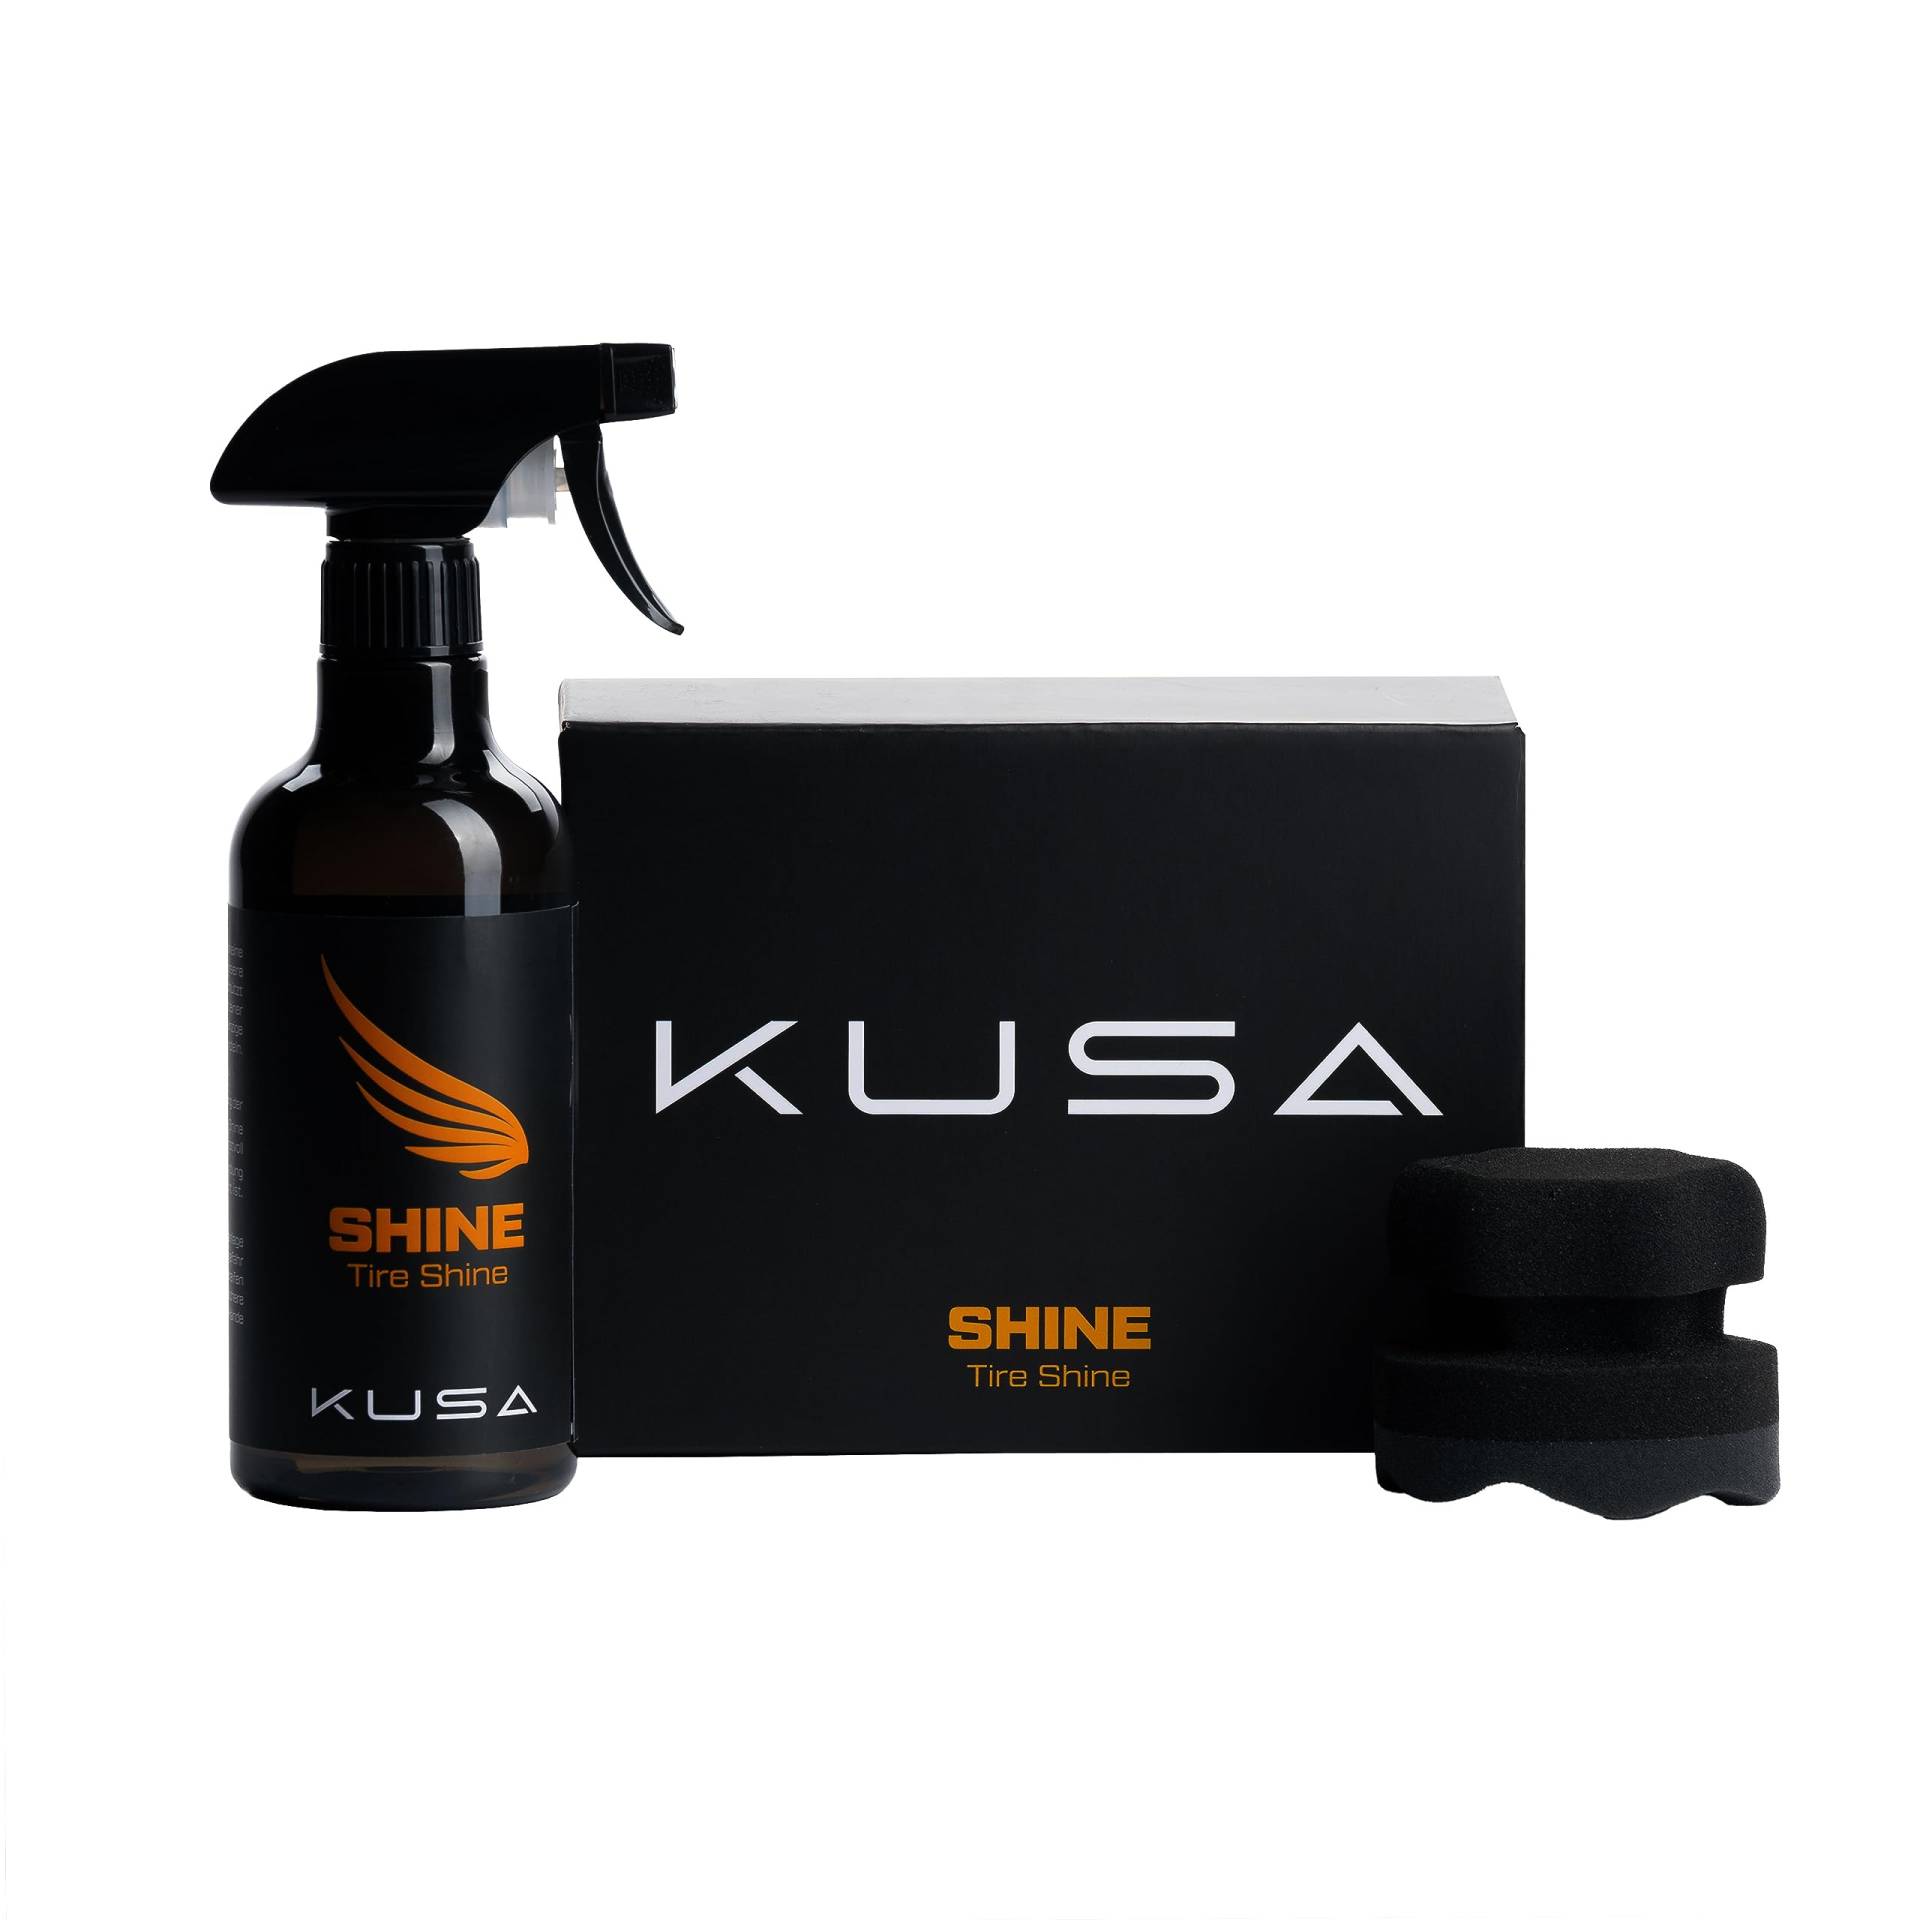 KuSa Reifen Pflege Set: Reifenglanzspray 500ml + Applikatorpad - pflegt und schützt Gummi der Reifen - für intensives Schwarz - neuwertige Optik und langanhaltender Glanz von KuSa